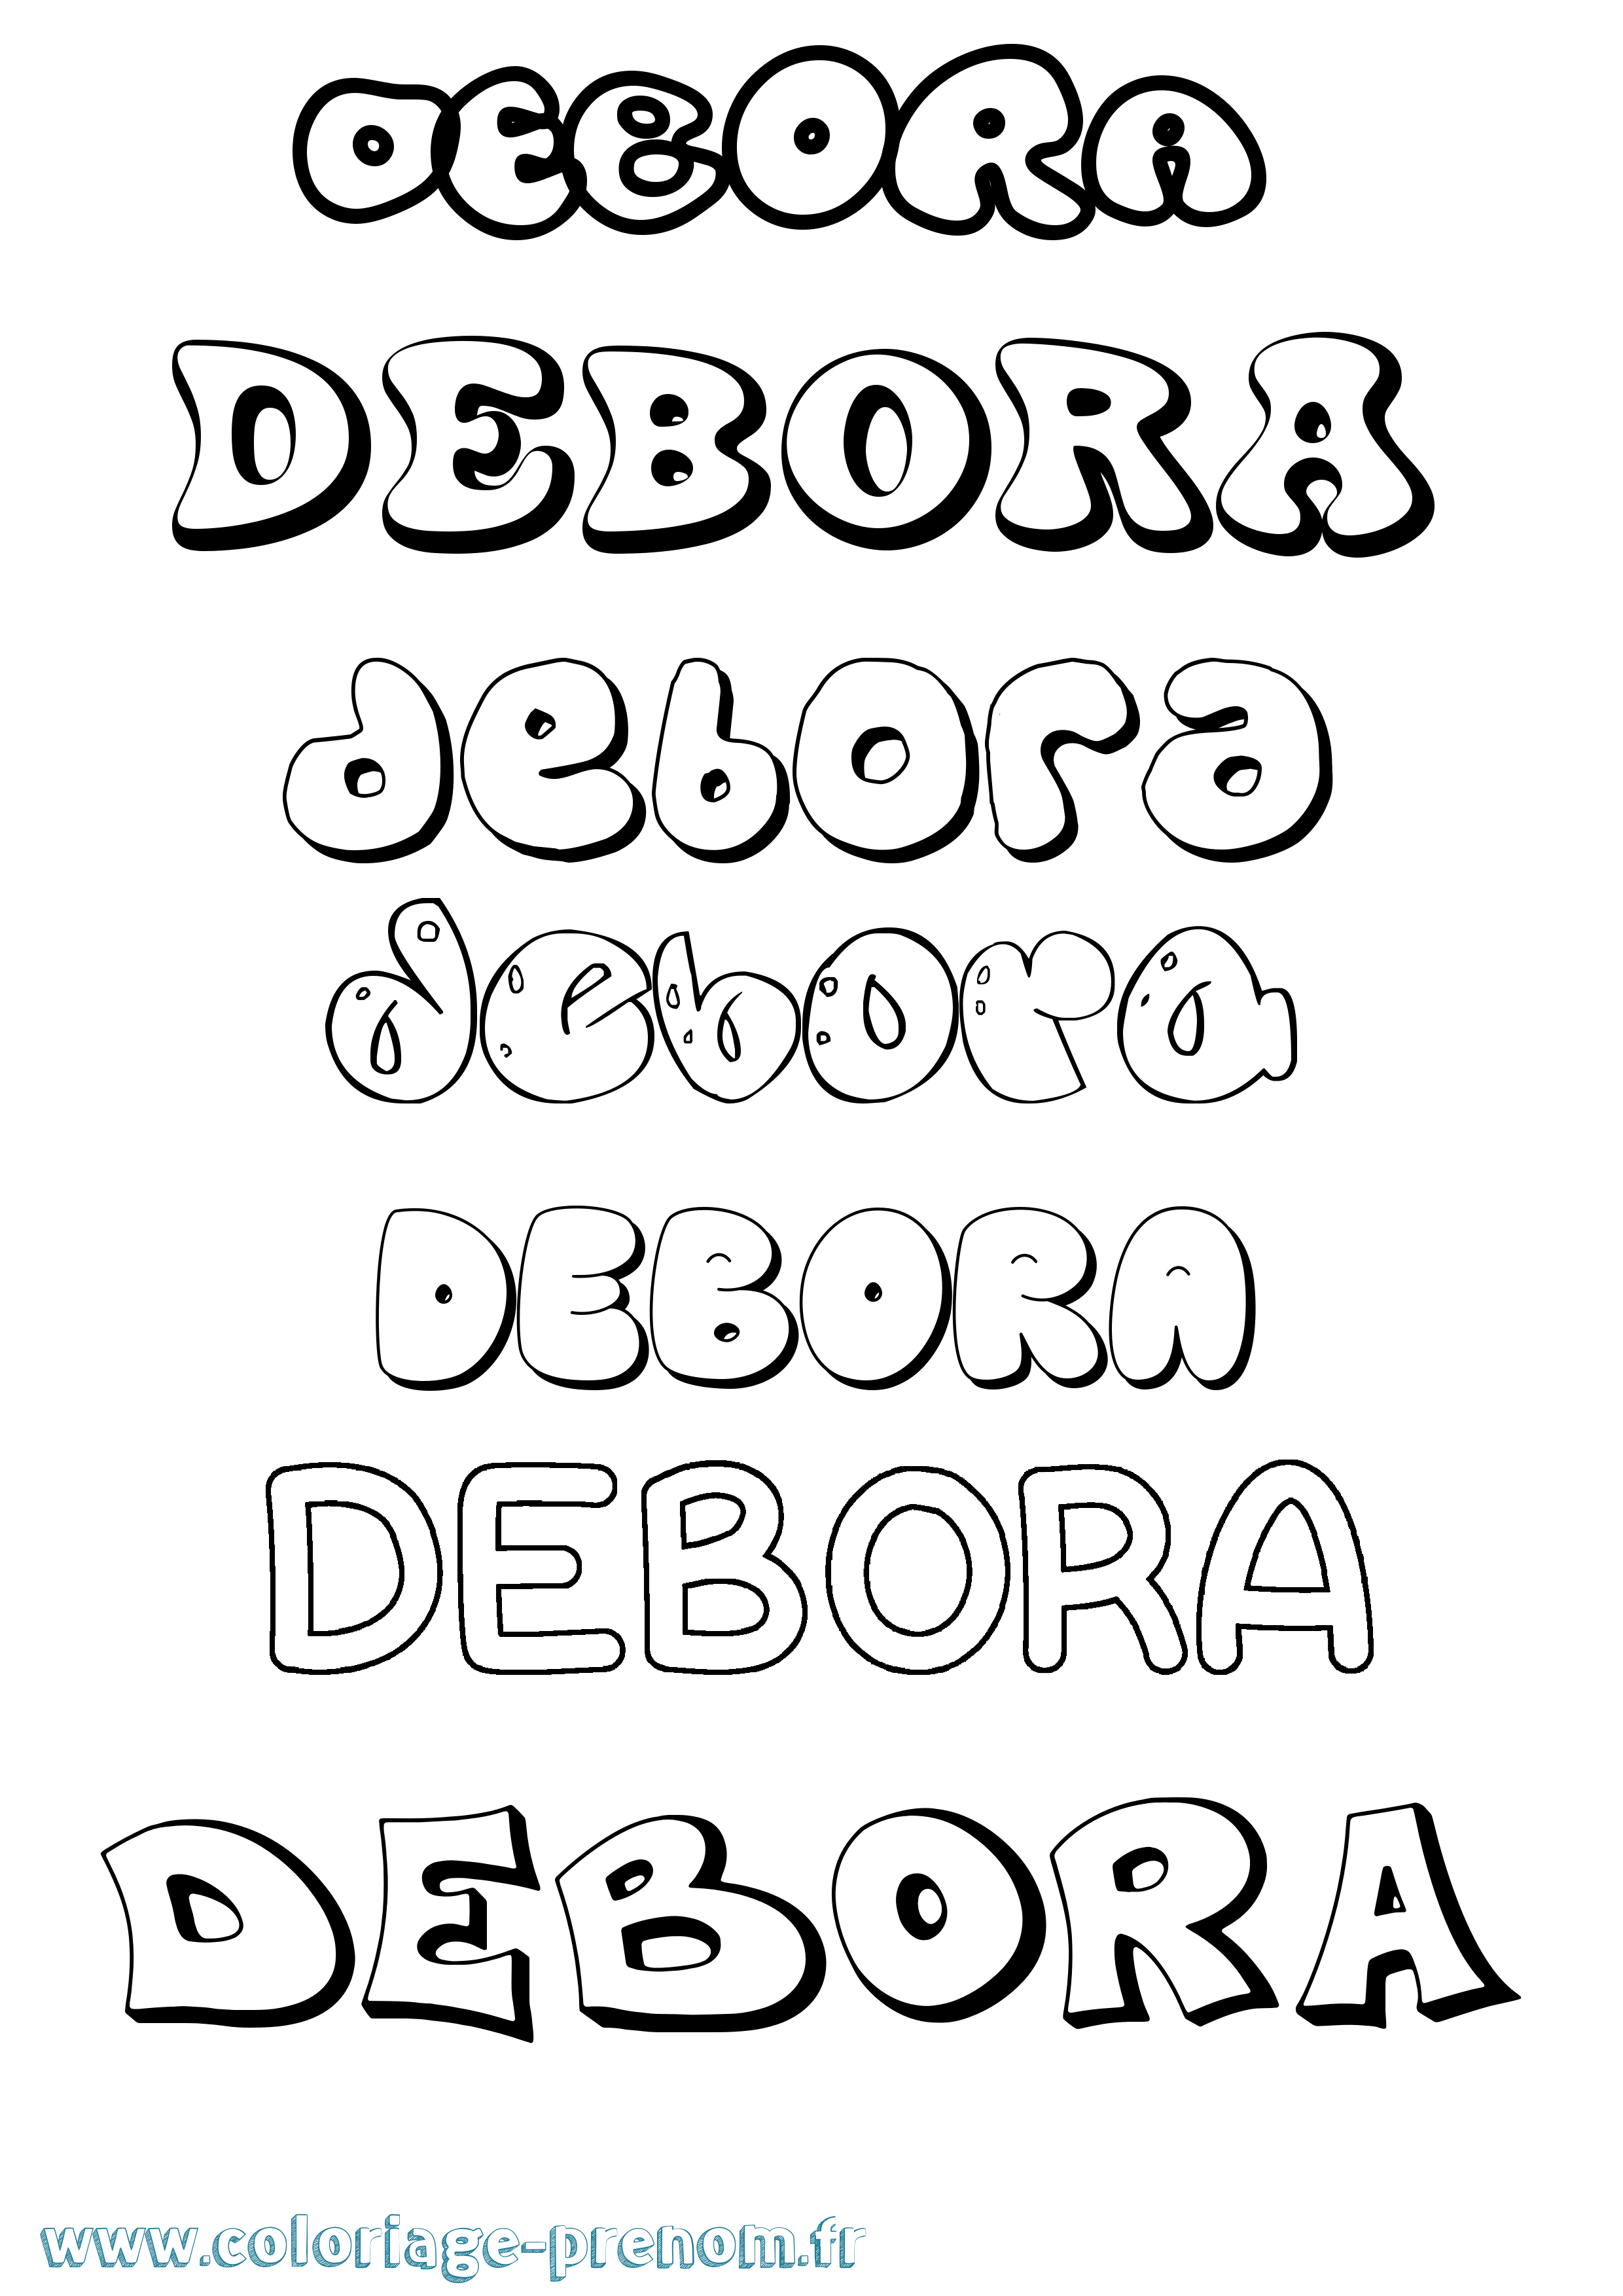 Coloriage prénom Debora Bubble